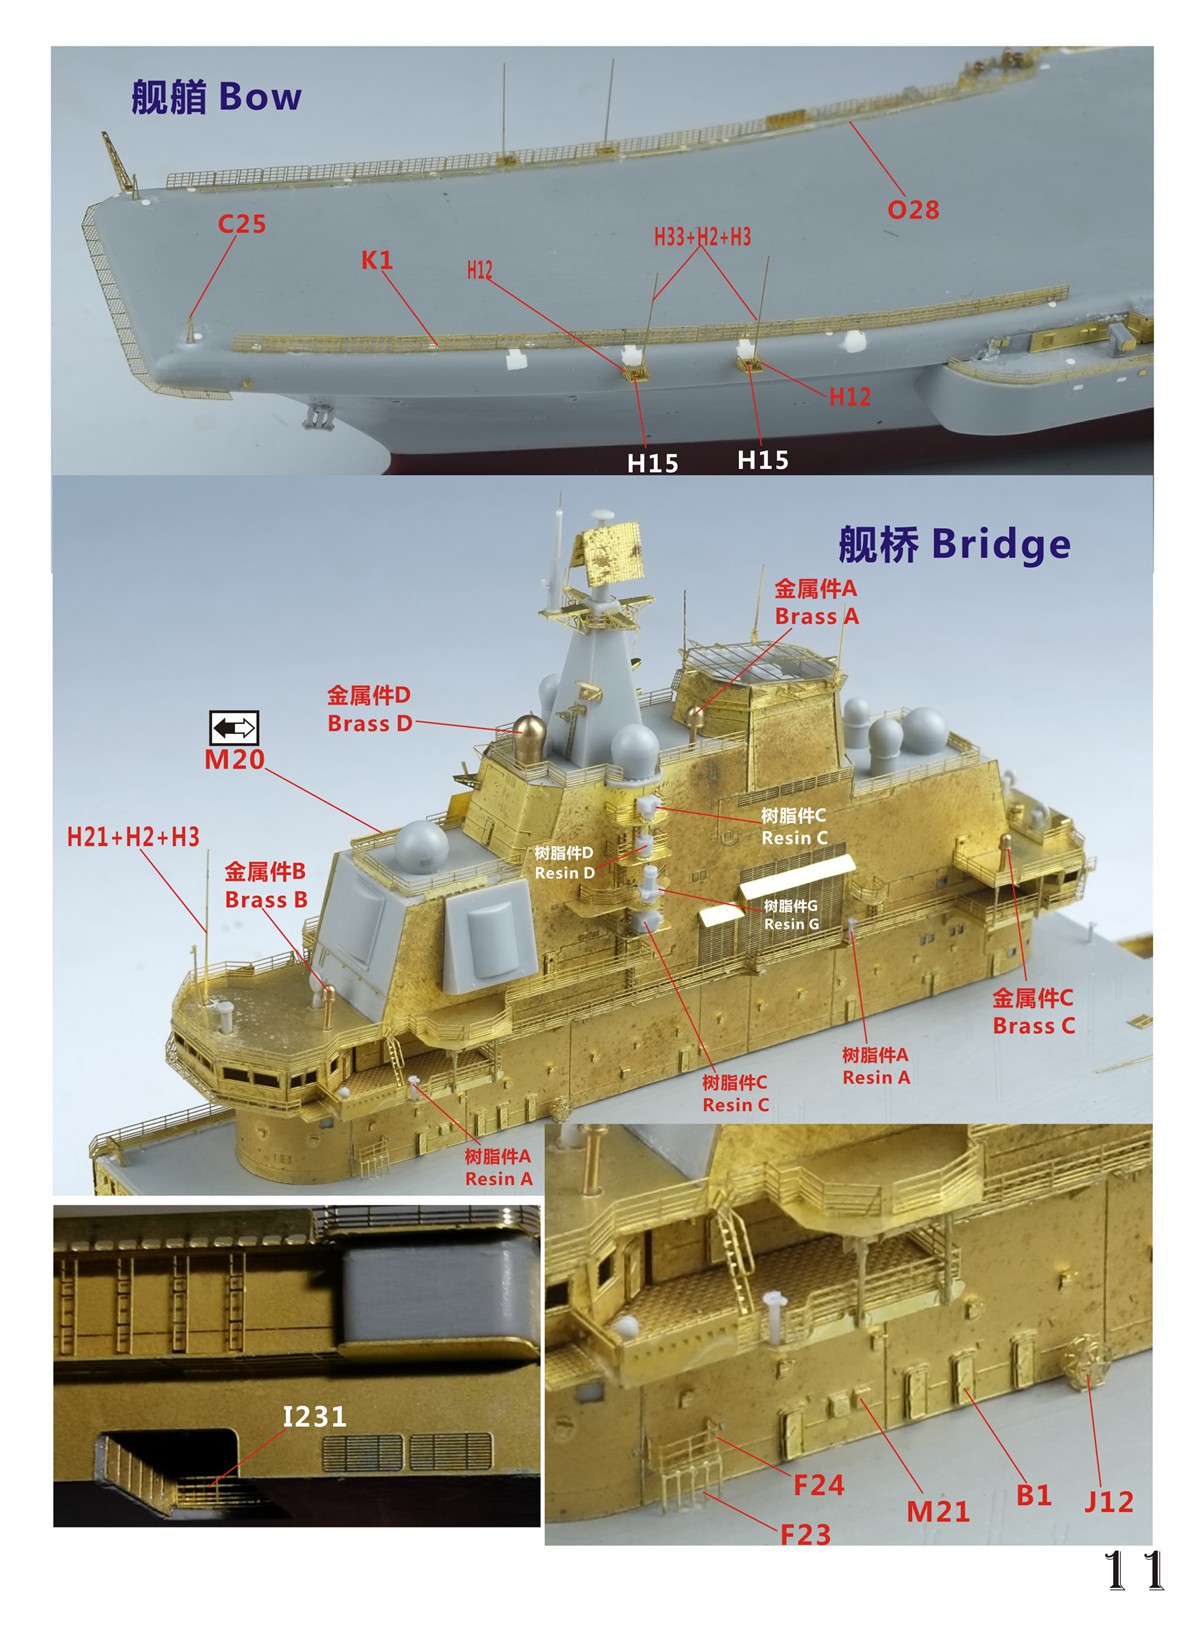 1/700 现代中国海军辽宁号航空母舰2019年状态超级改造套件(配小号手06703) - 点击图像关闭